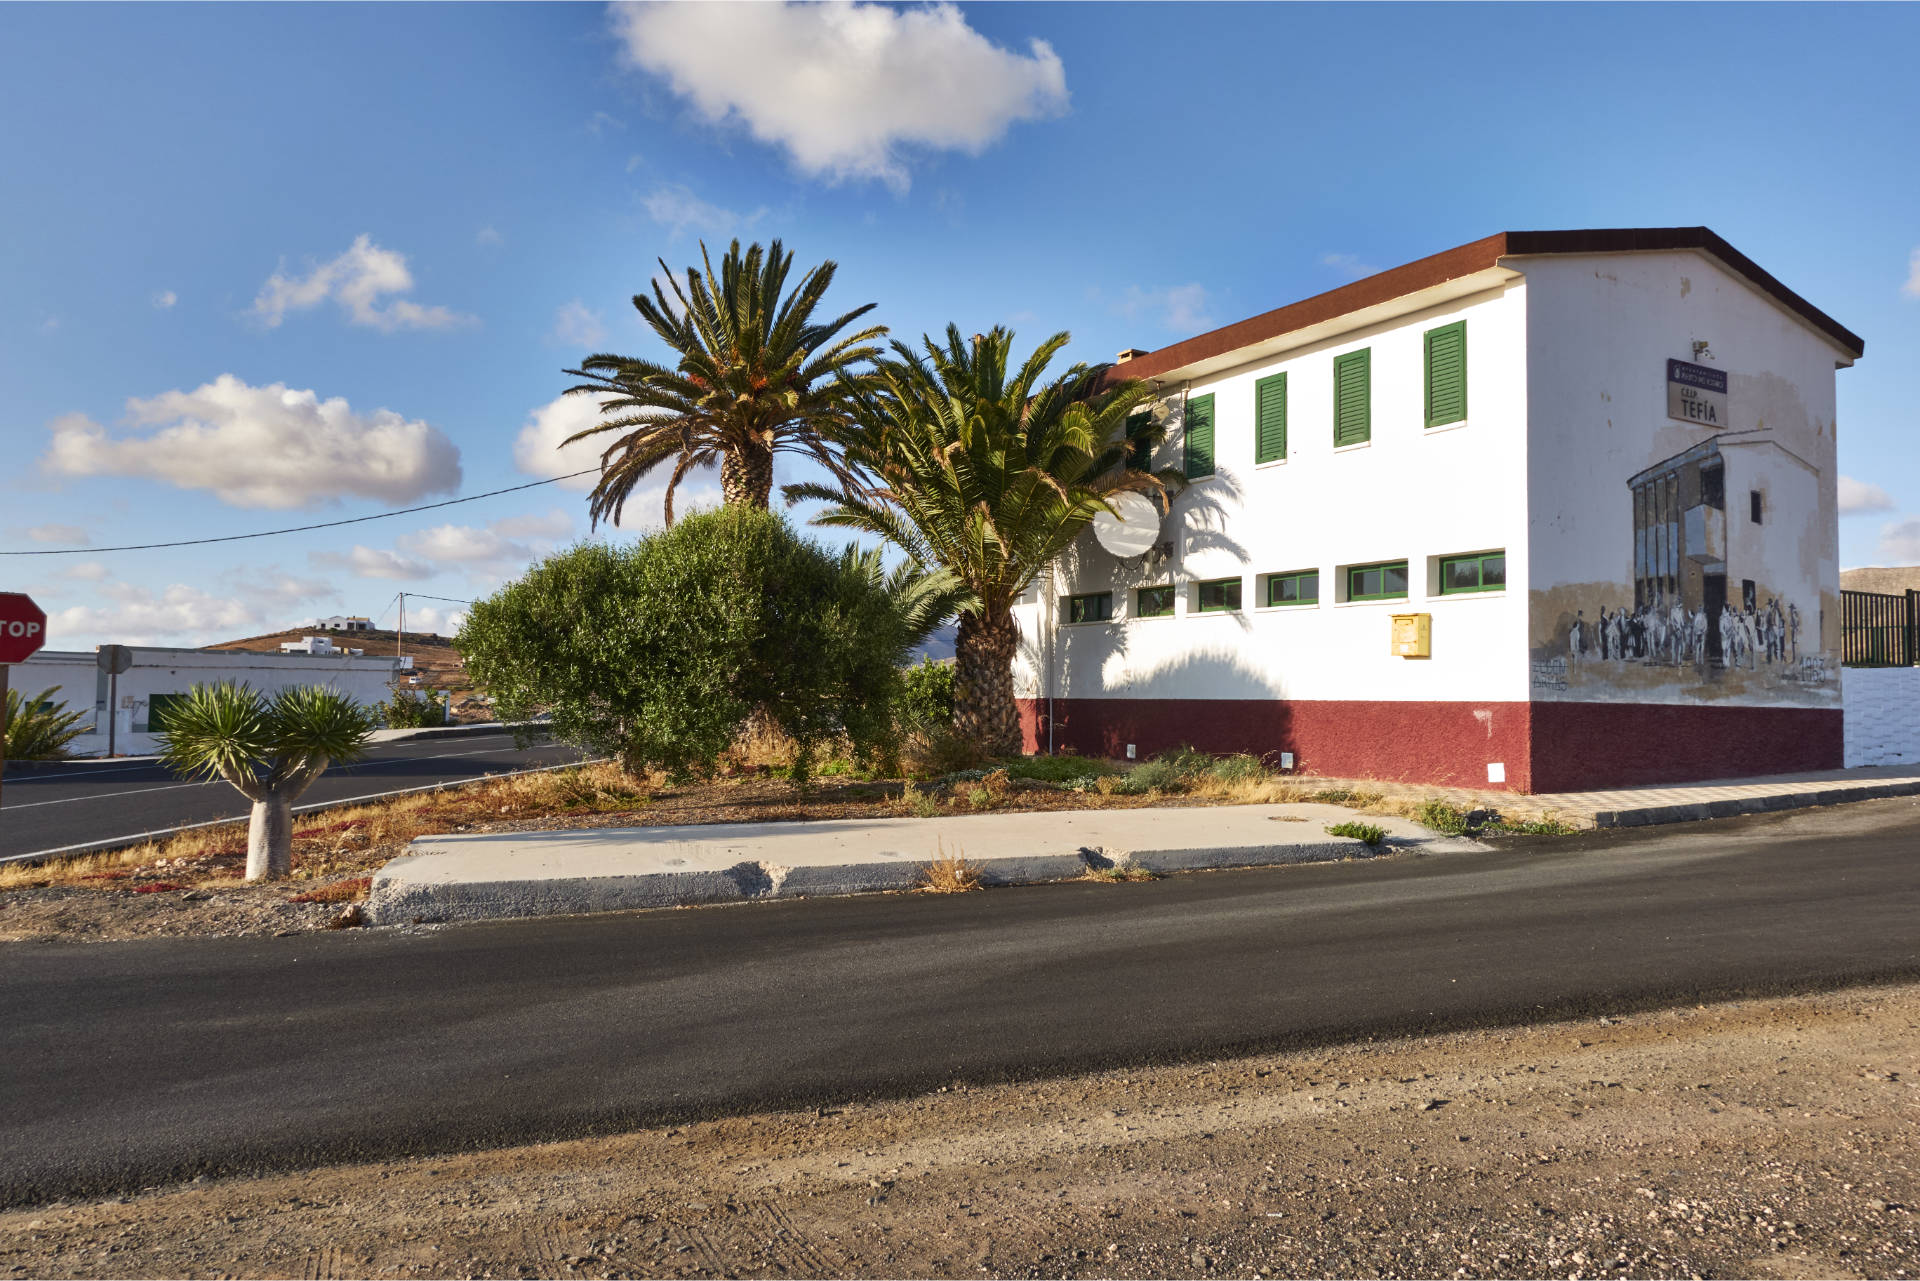 Die Schule von Tefía Fuerteventura aus dem Jahr 1963.